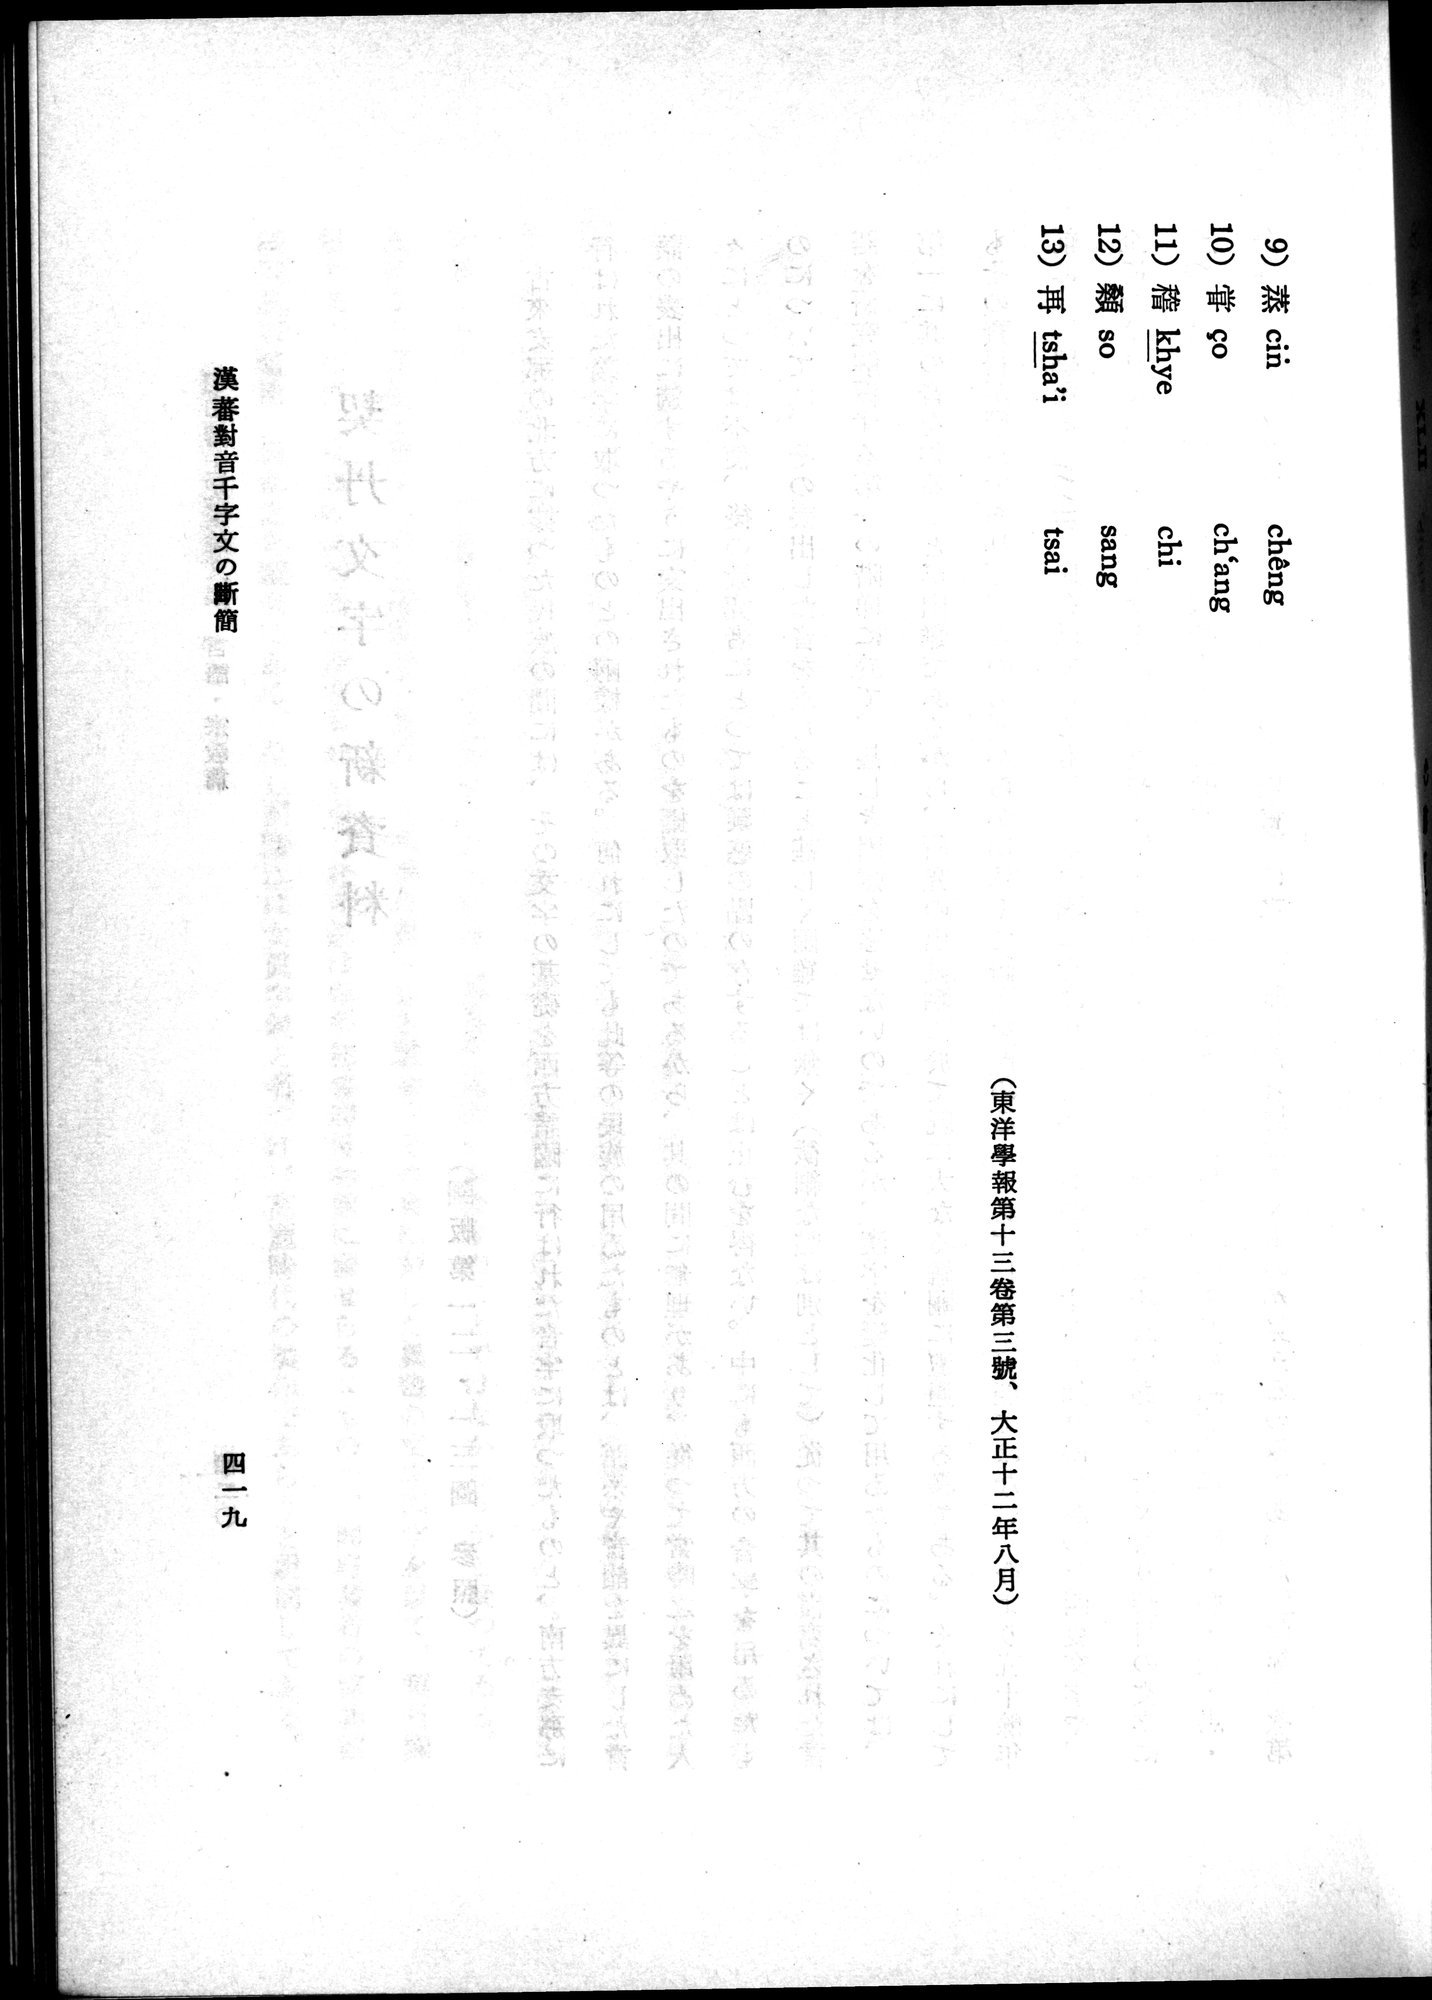 羽田博士史学論文集 : vol.2 / Page 481 (Grayscale High Resolution Image)